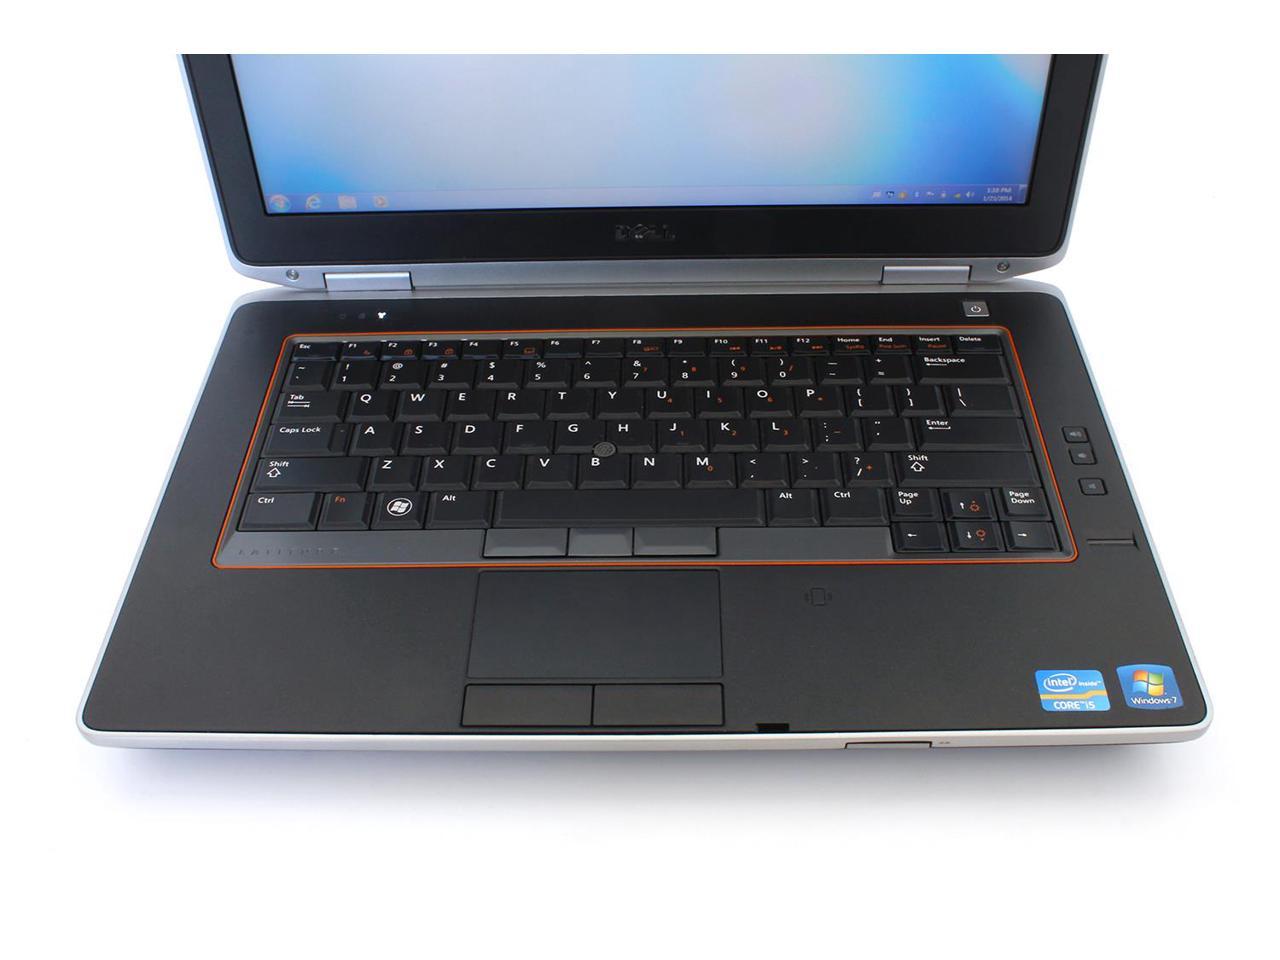 Dell Latitude E6420 Notebook Computer, Intel Core i5 2520M 2.5Ghz, 4GB DDR3, 960GB SSD Hard Drive, DVDRW, Windows 10